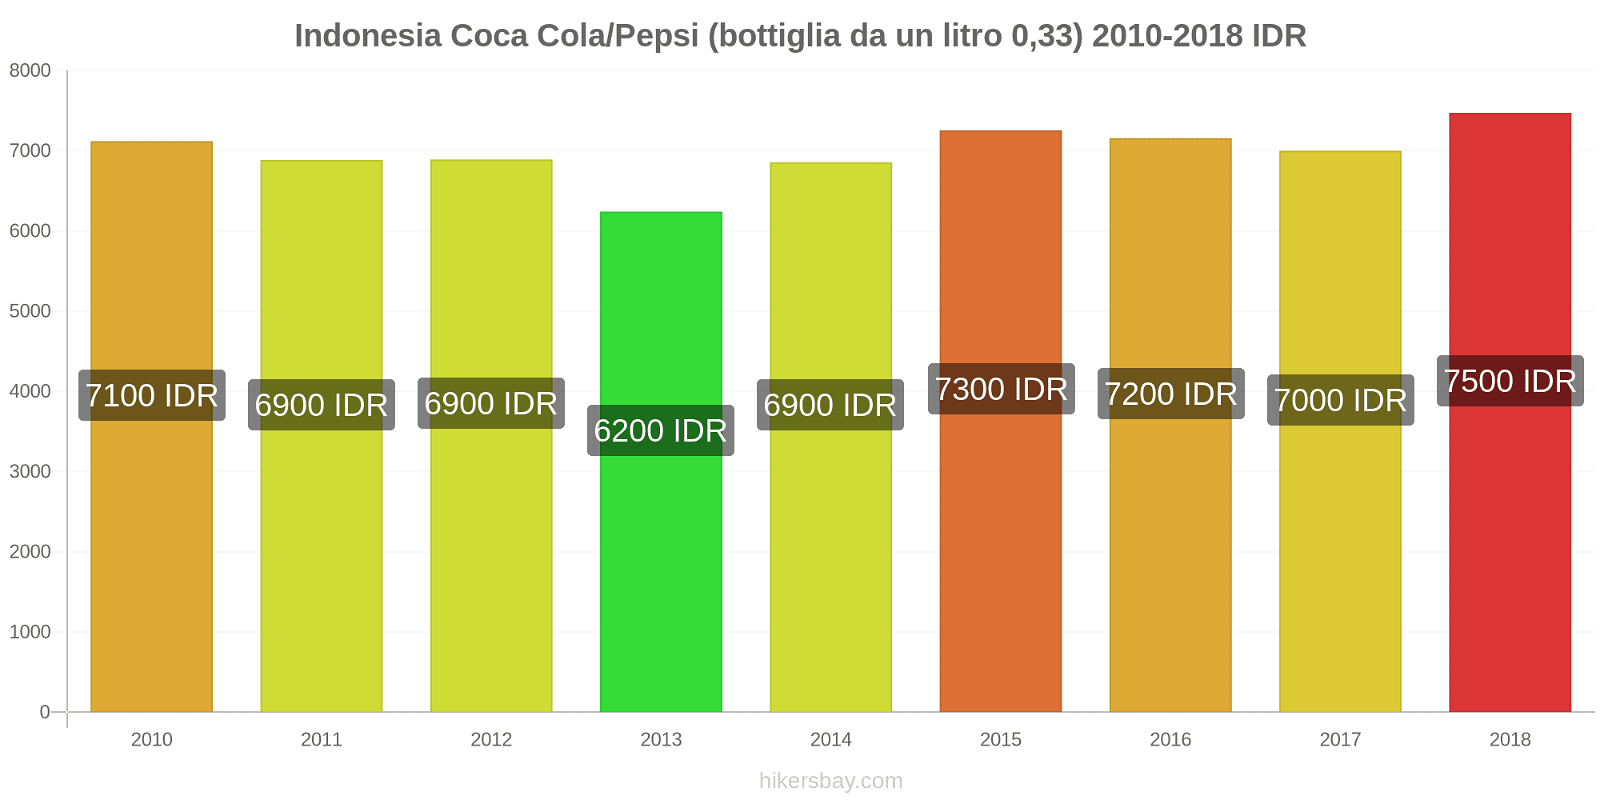 Indonesia cambi di prezzo Coca-Cola/Pepsi (bottiglia da 0.33 litri) hikersbay.com